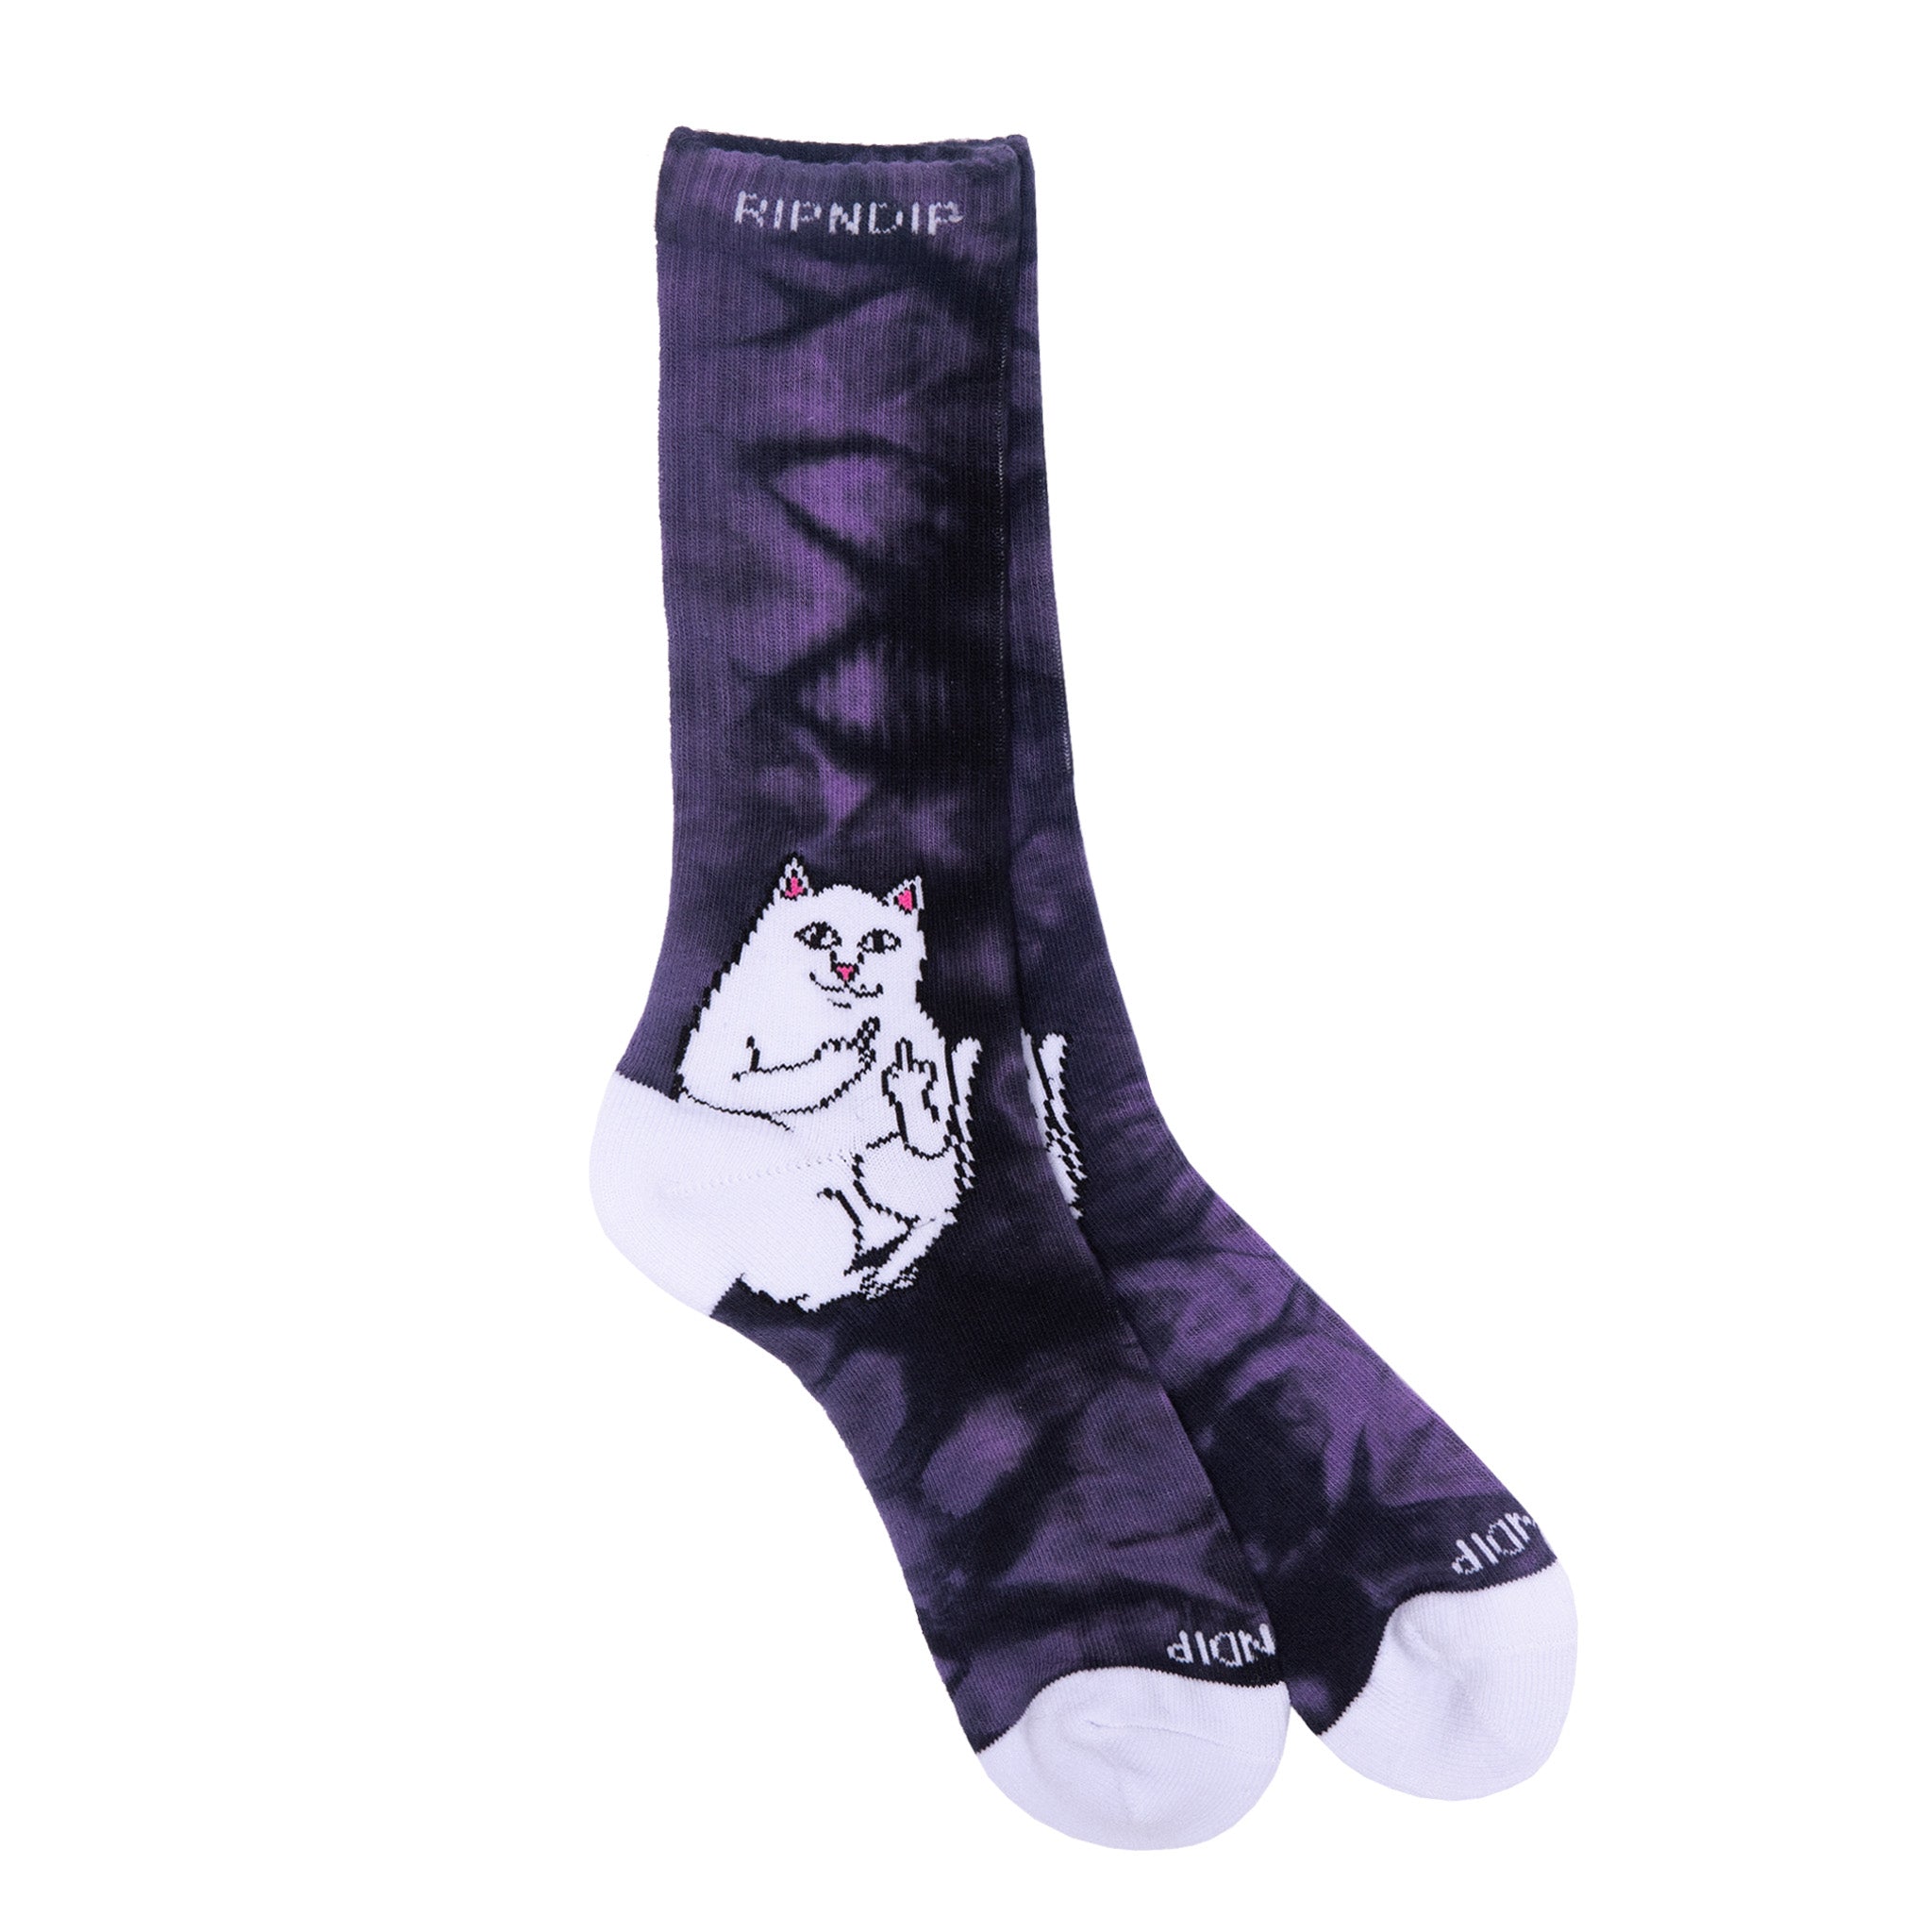 Lord Nermal Socks (Purple Lightning)